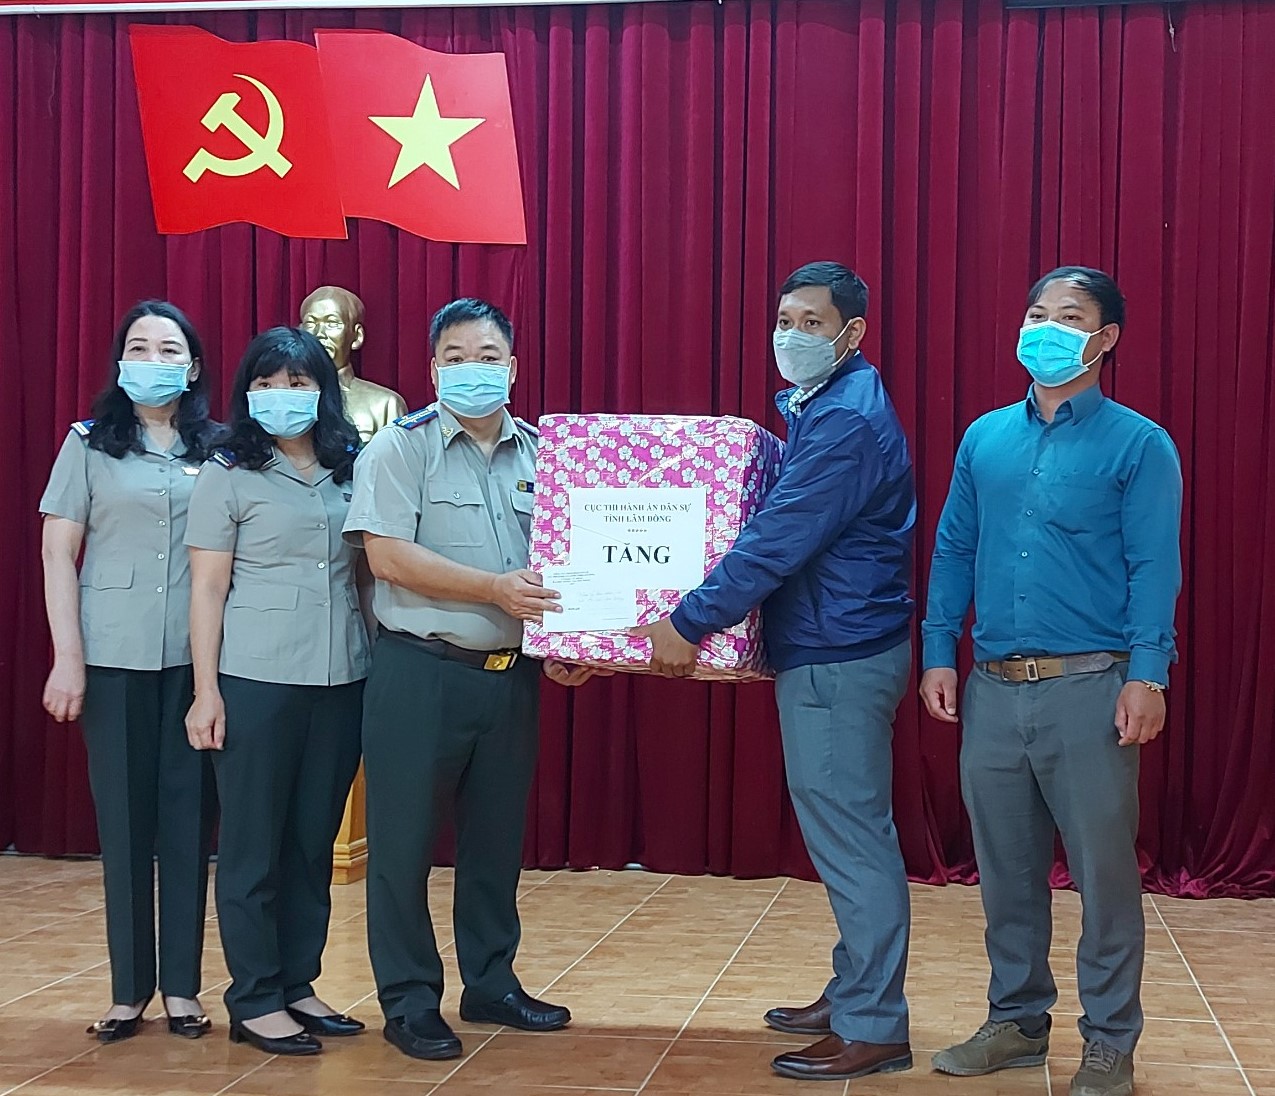 Cục Thi hành án dân sự tỉnh Lâm Đồng chung tay xây dựng nông thôn mới  và ủng hộ công tác chống dịch Covid-19